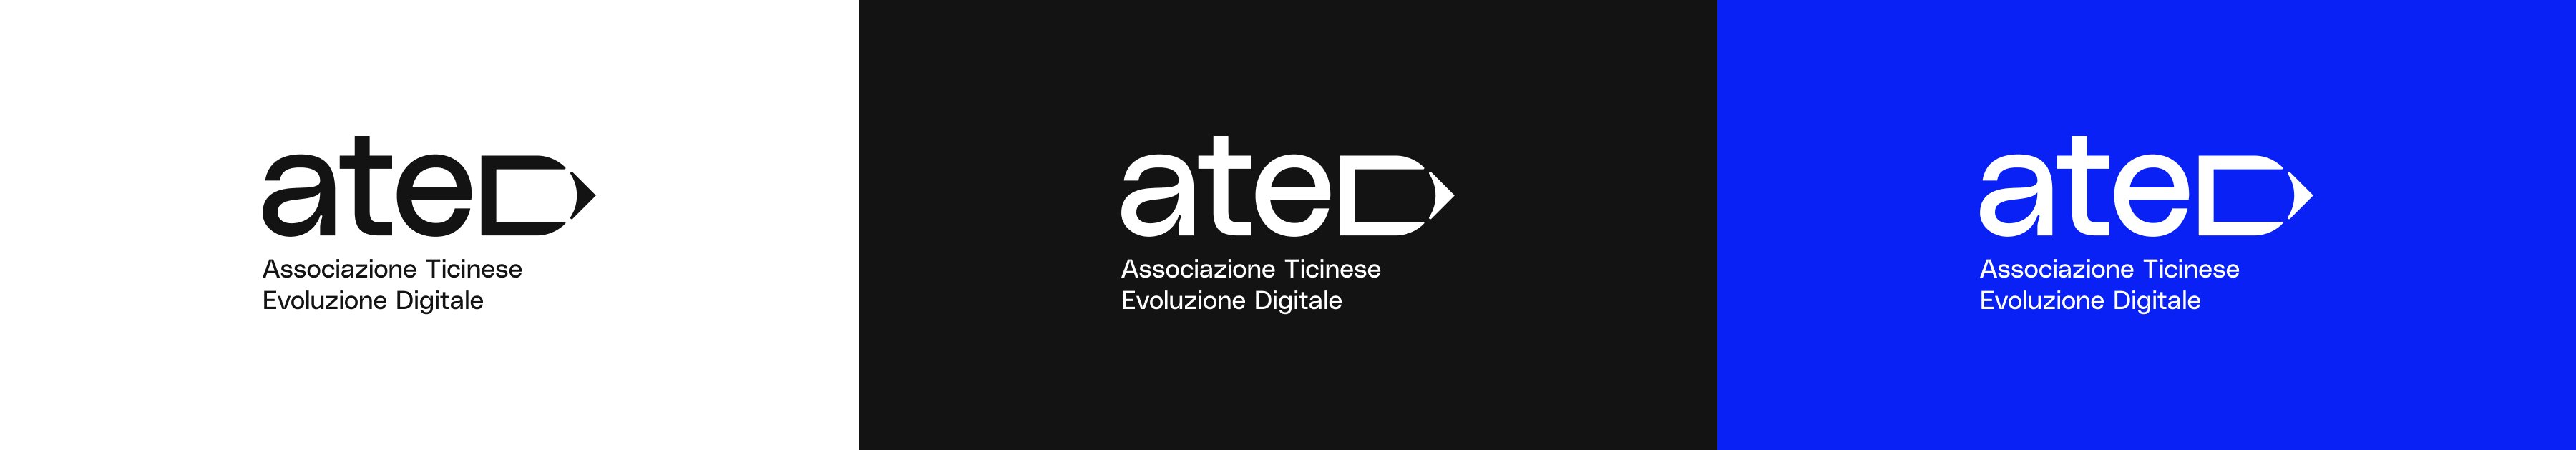 logo-ated-descriptor